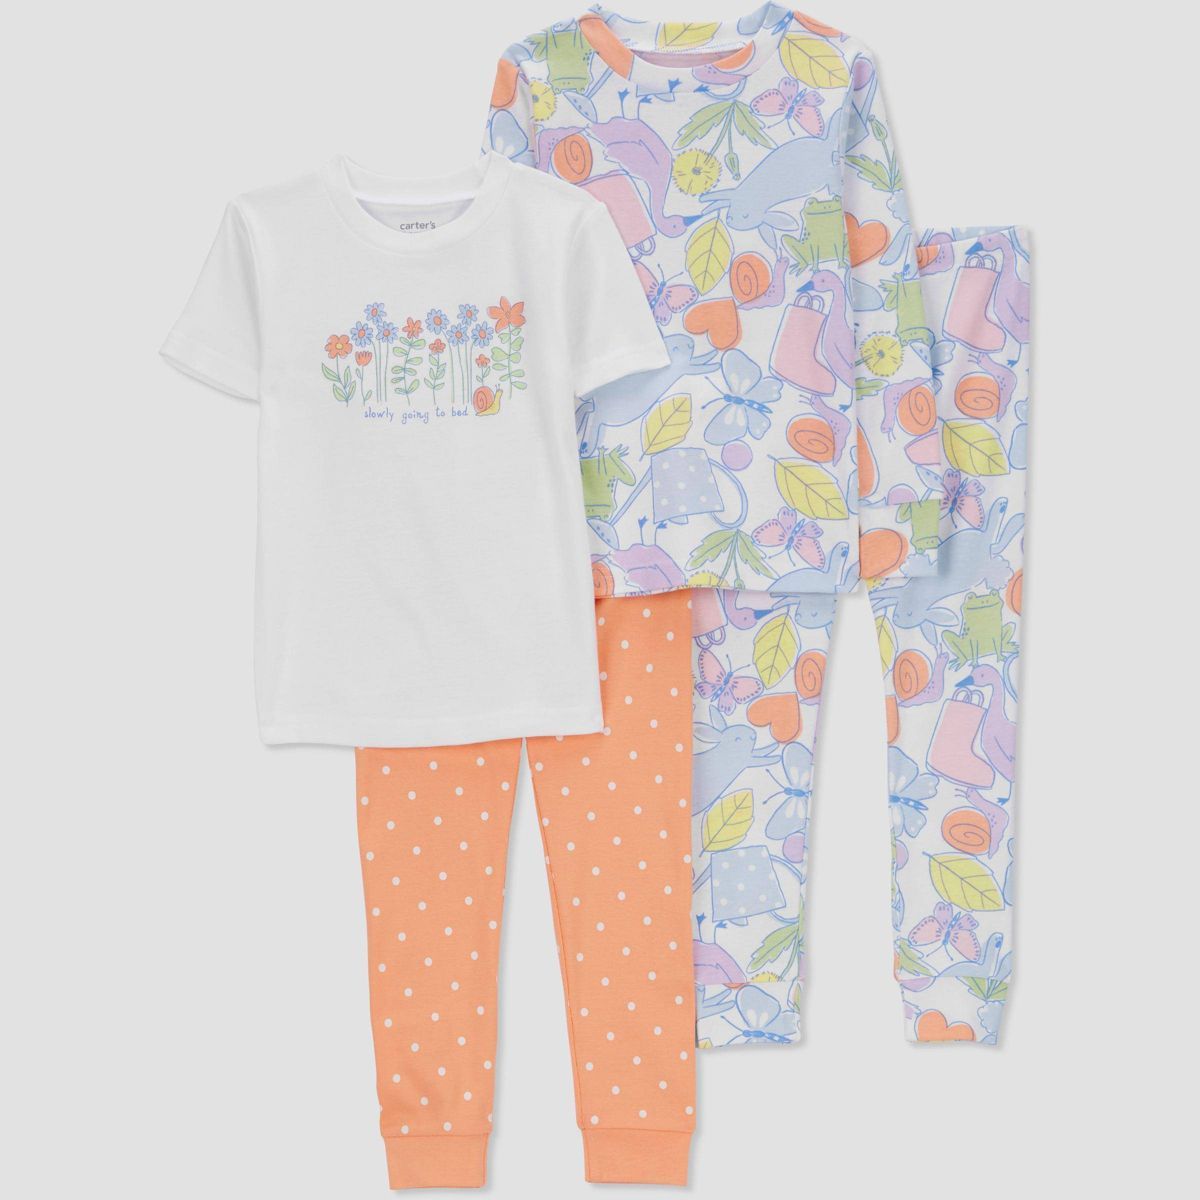 Carter's Just One You® Toddler Girls' Polka Dots & Floral Printed Pajama Set - Orange/Blue/White | Target